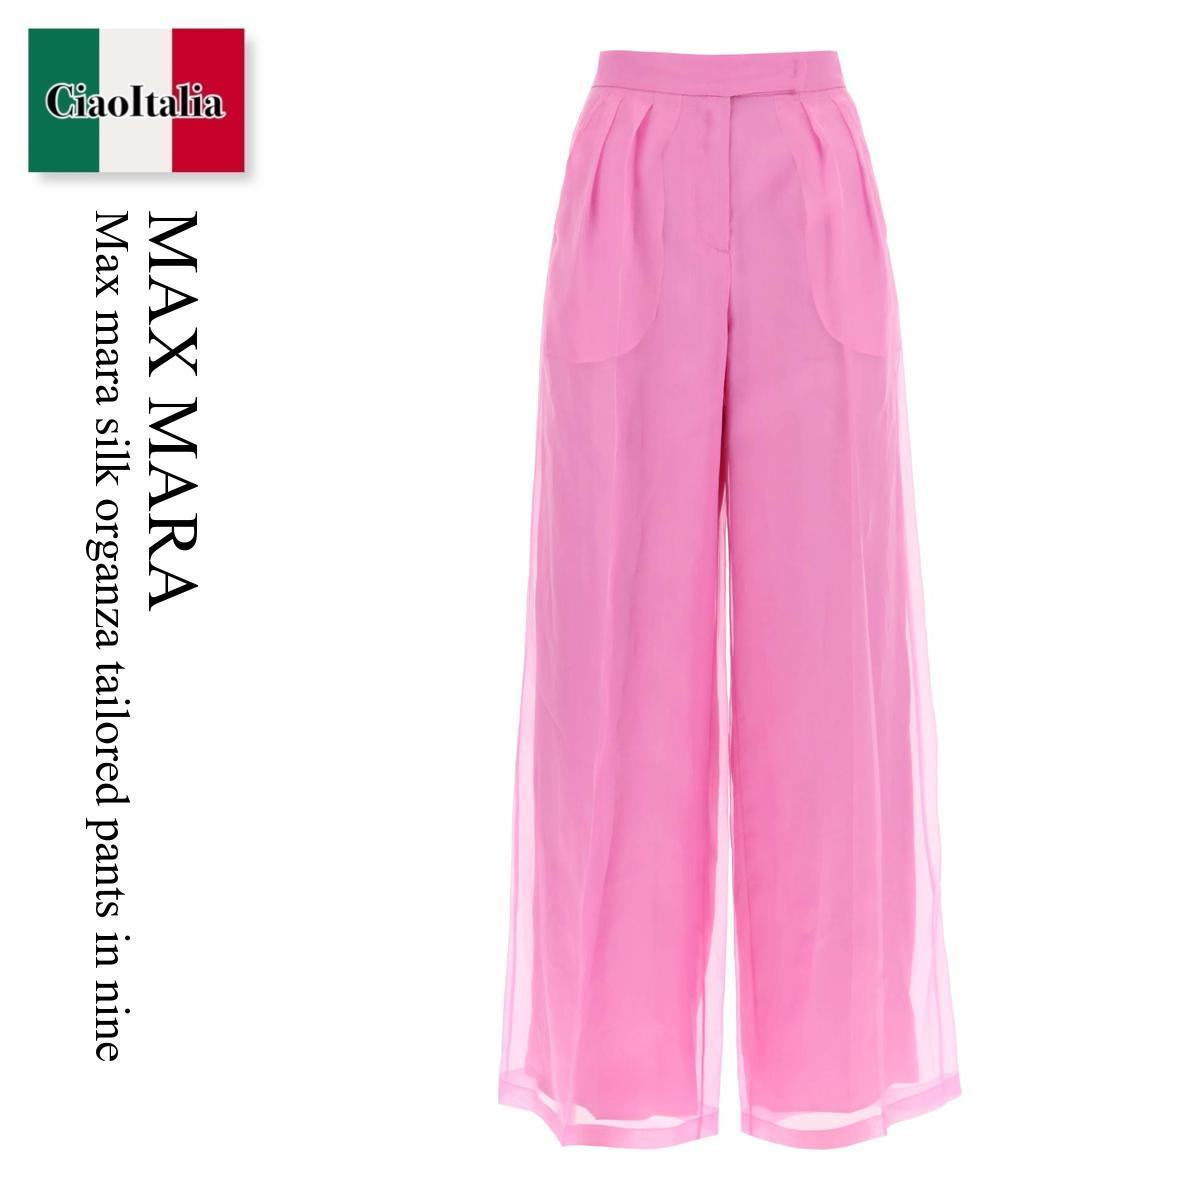 マックスマーラ / Max Mara Silk Organza Tailored Pants In Nine / CALIBRI / CALIBRI 057PE / CALIBRI057PE / パンツ / 「正規品補償」「VIP価格販売」「お買い物サポート」